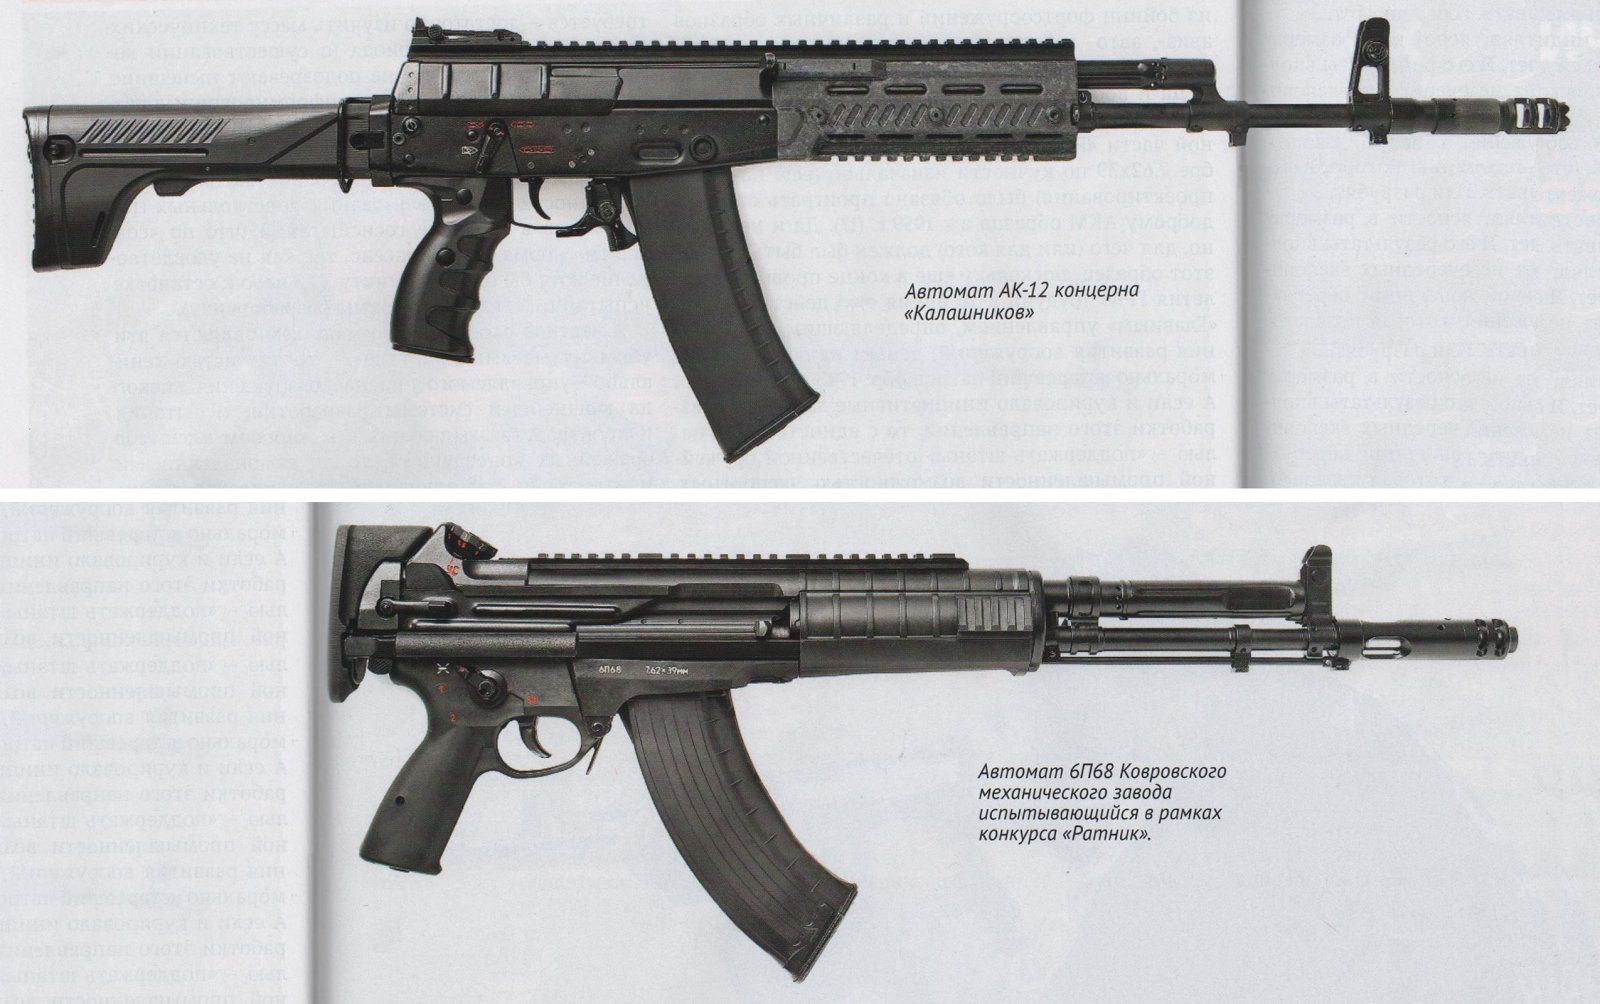 gun-weapon-assault-rifle-machine-gun-Handgun-AK-12-146788-wallhere.com.jpg